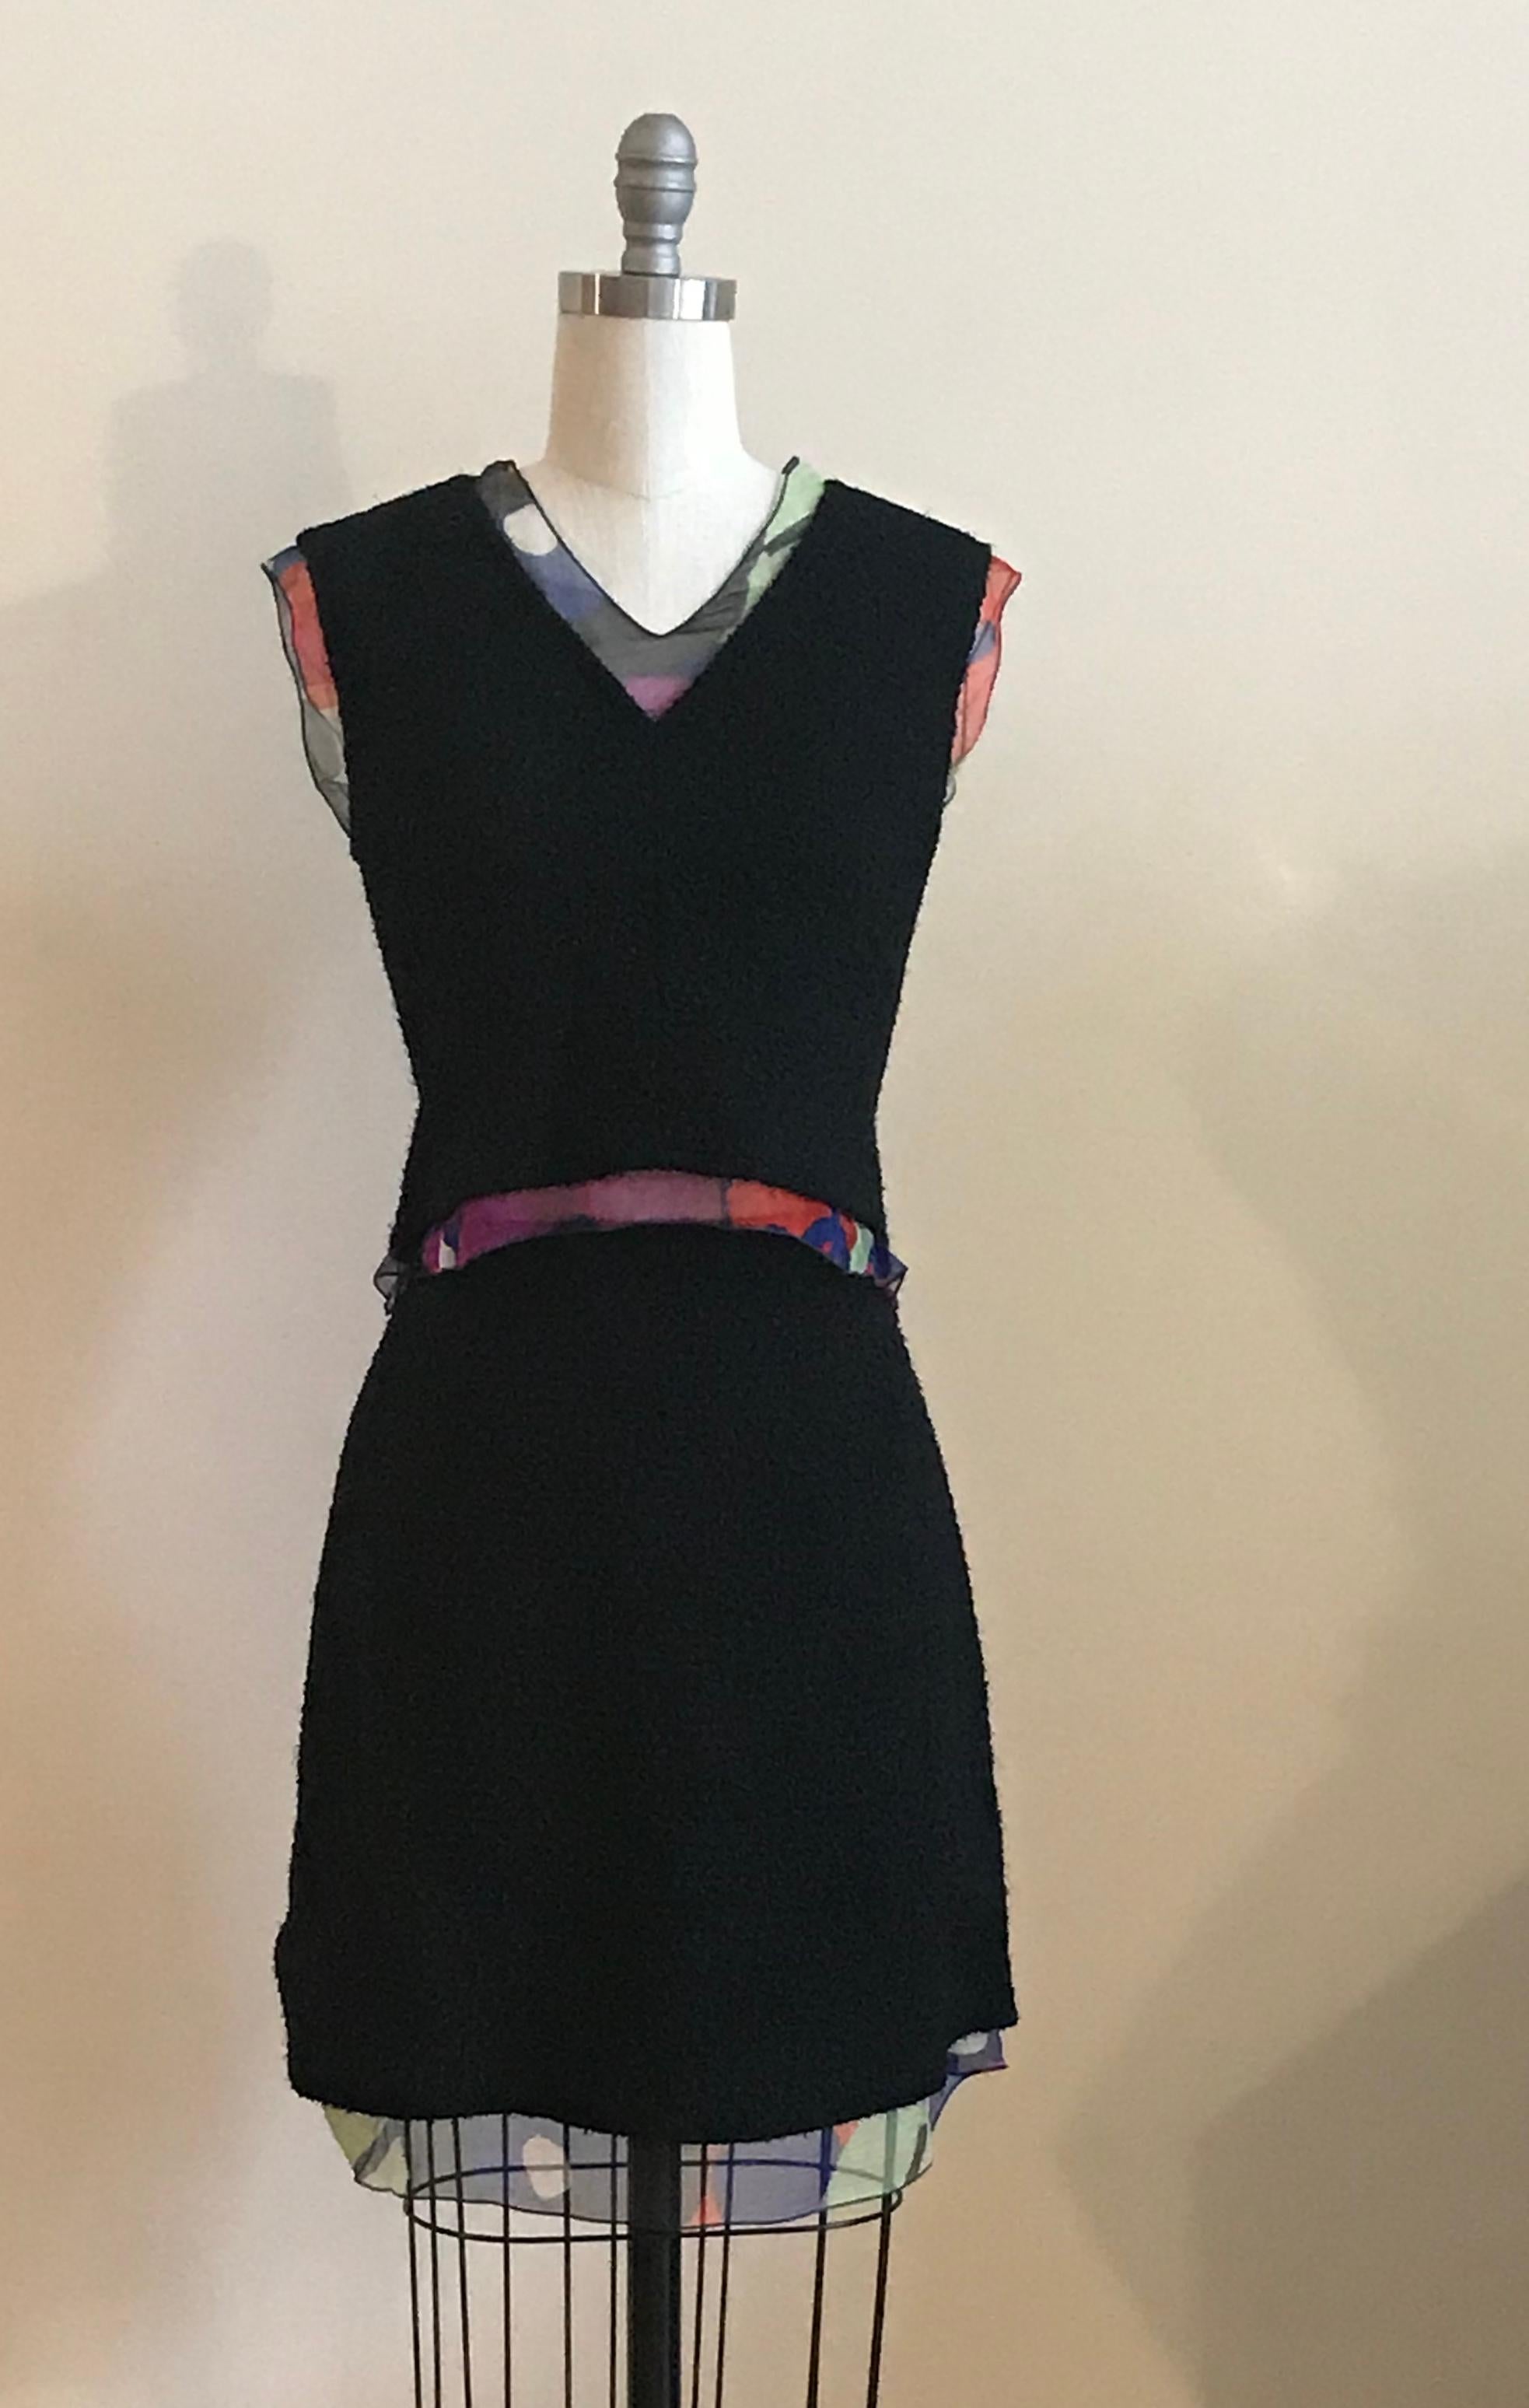 Tailleur trois pièces noir Chanel composé d'une jupe, d'un haut en coquille et d'une veste ouverte sur le devant en tissu bouclé nubby, garni d'une mousseline de soie à imprimé floral abstrait multicolore, de la collection de transition 2000.

La